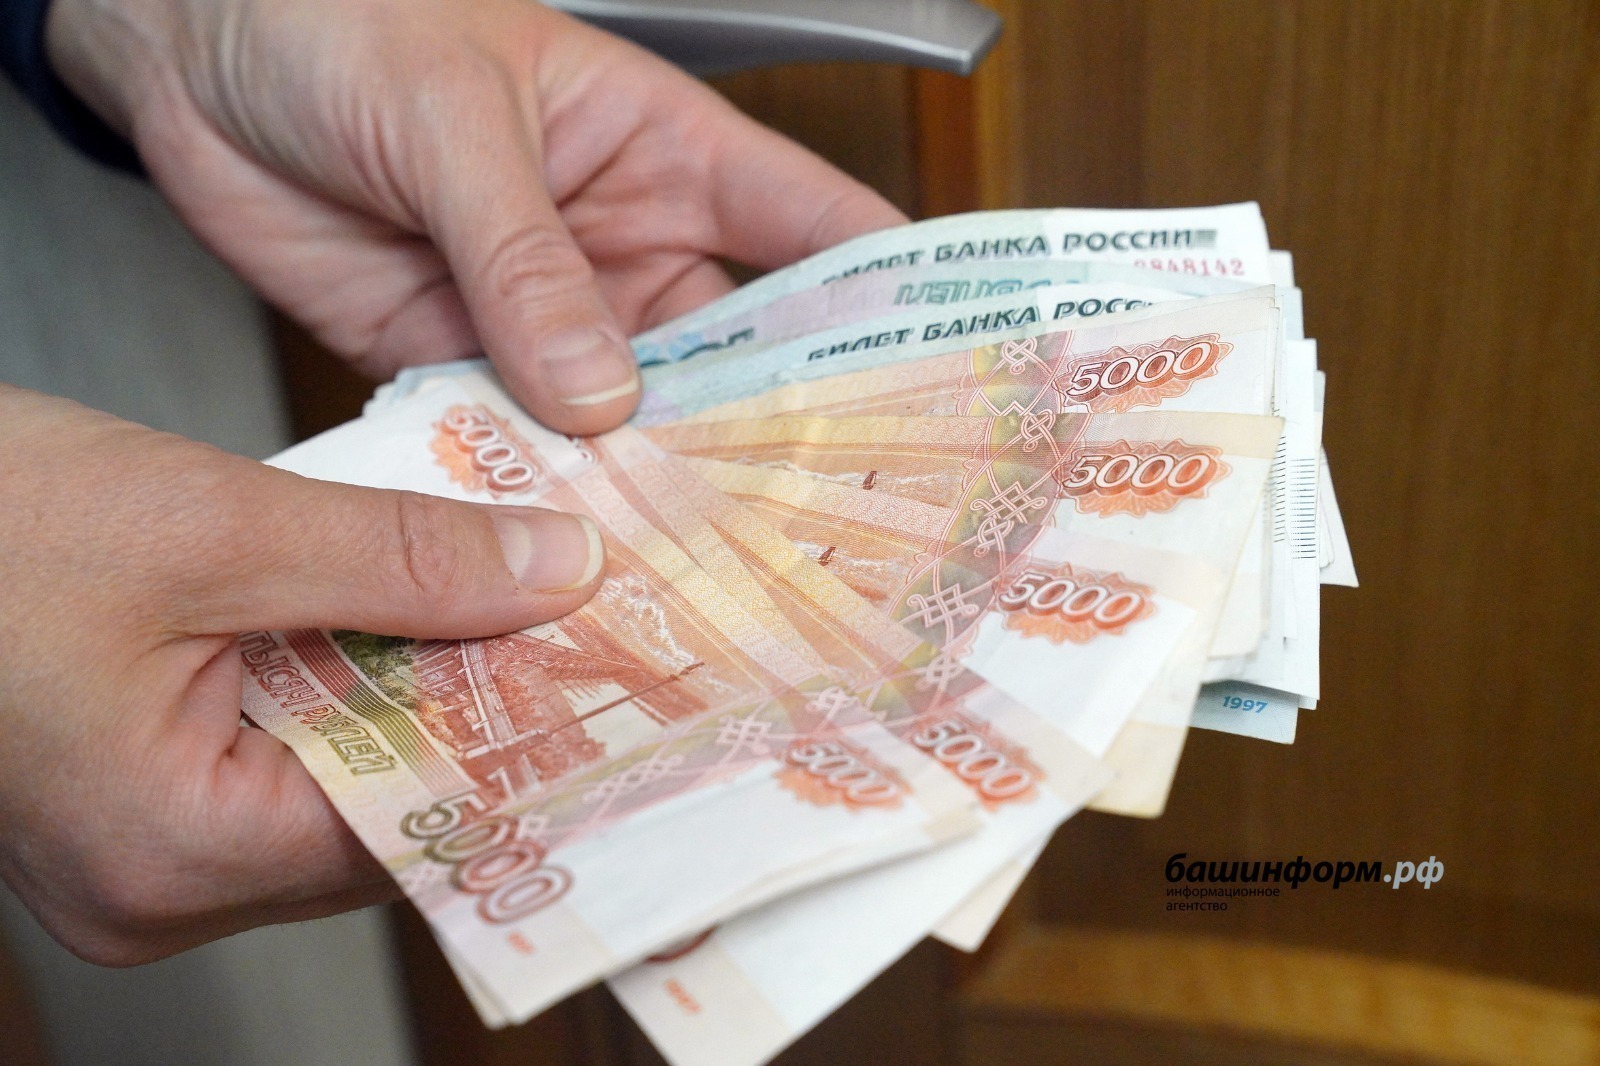 МРОТ в России увеличится на 18,5%